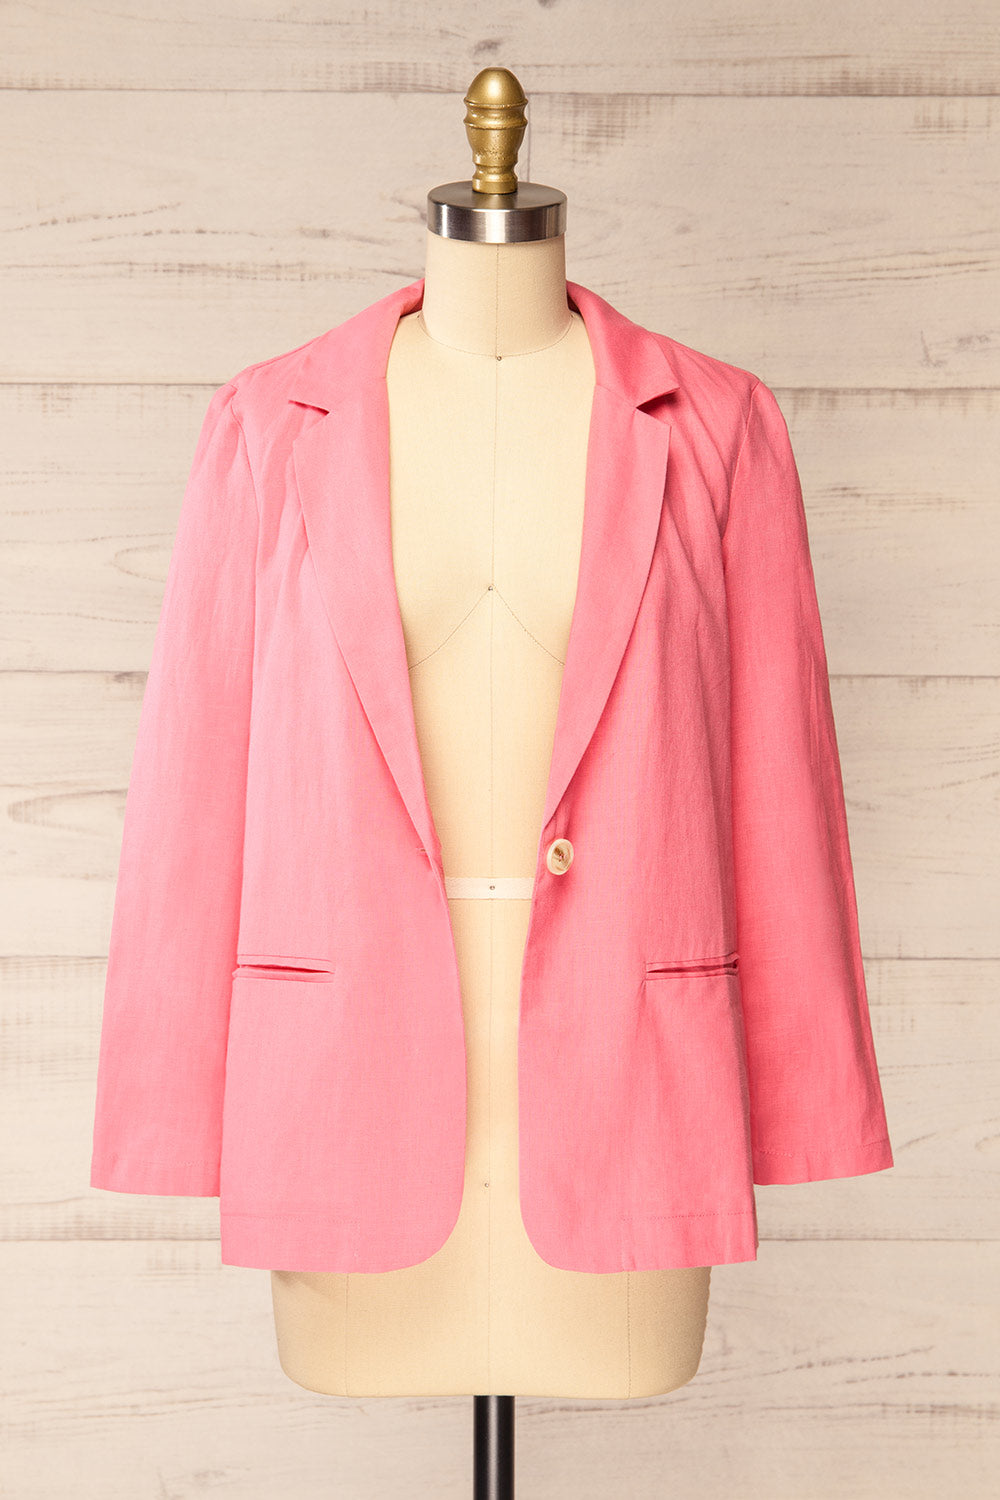 Sucunduri Pink Light Linen Blazer | La petite garçonne open view